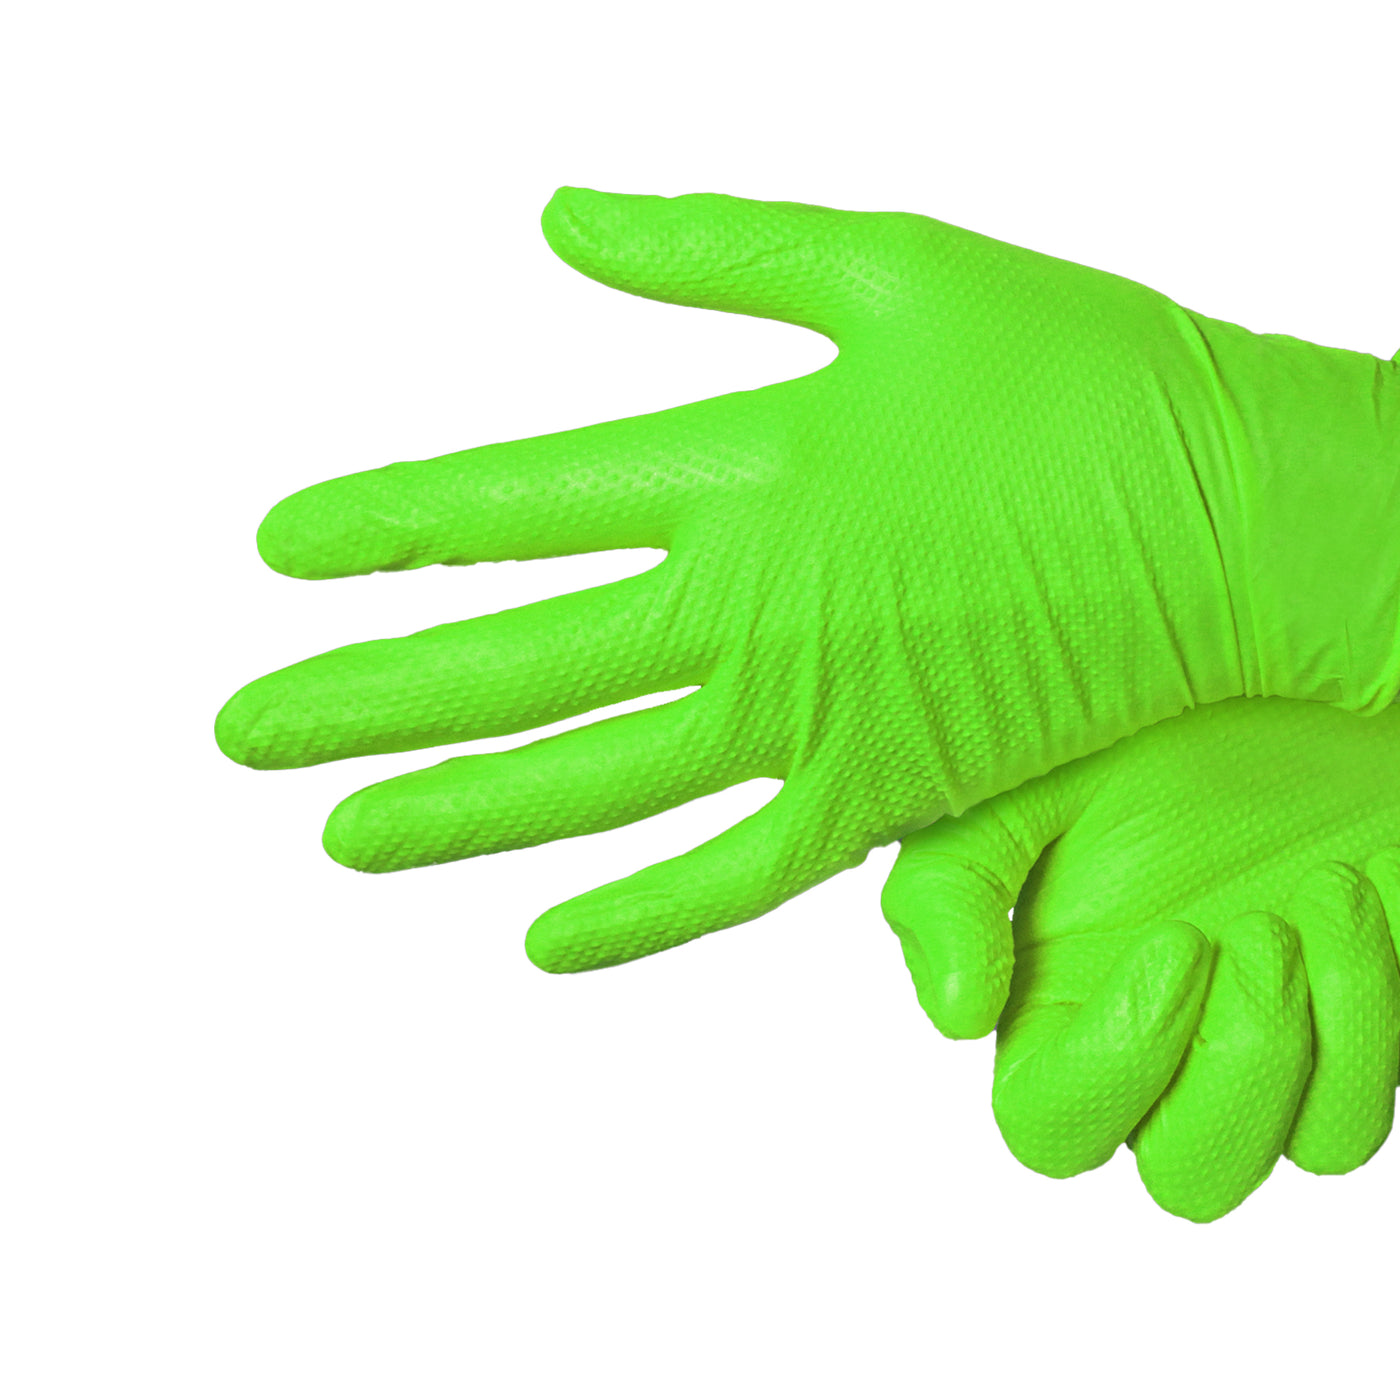 Edma Pro Defender Green Nitrile Diamond Grip 9mil Gloves on hands #color_green